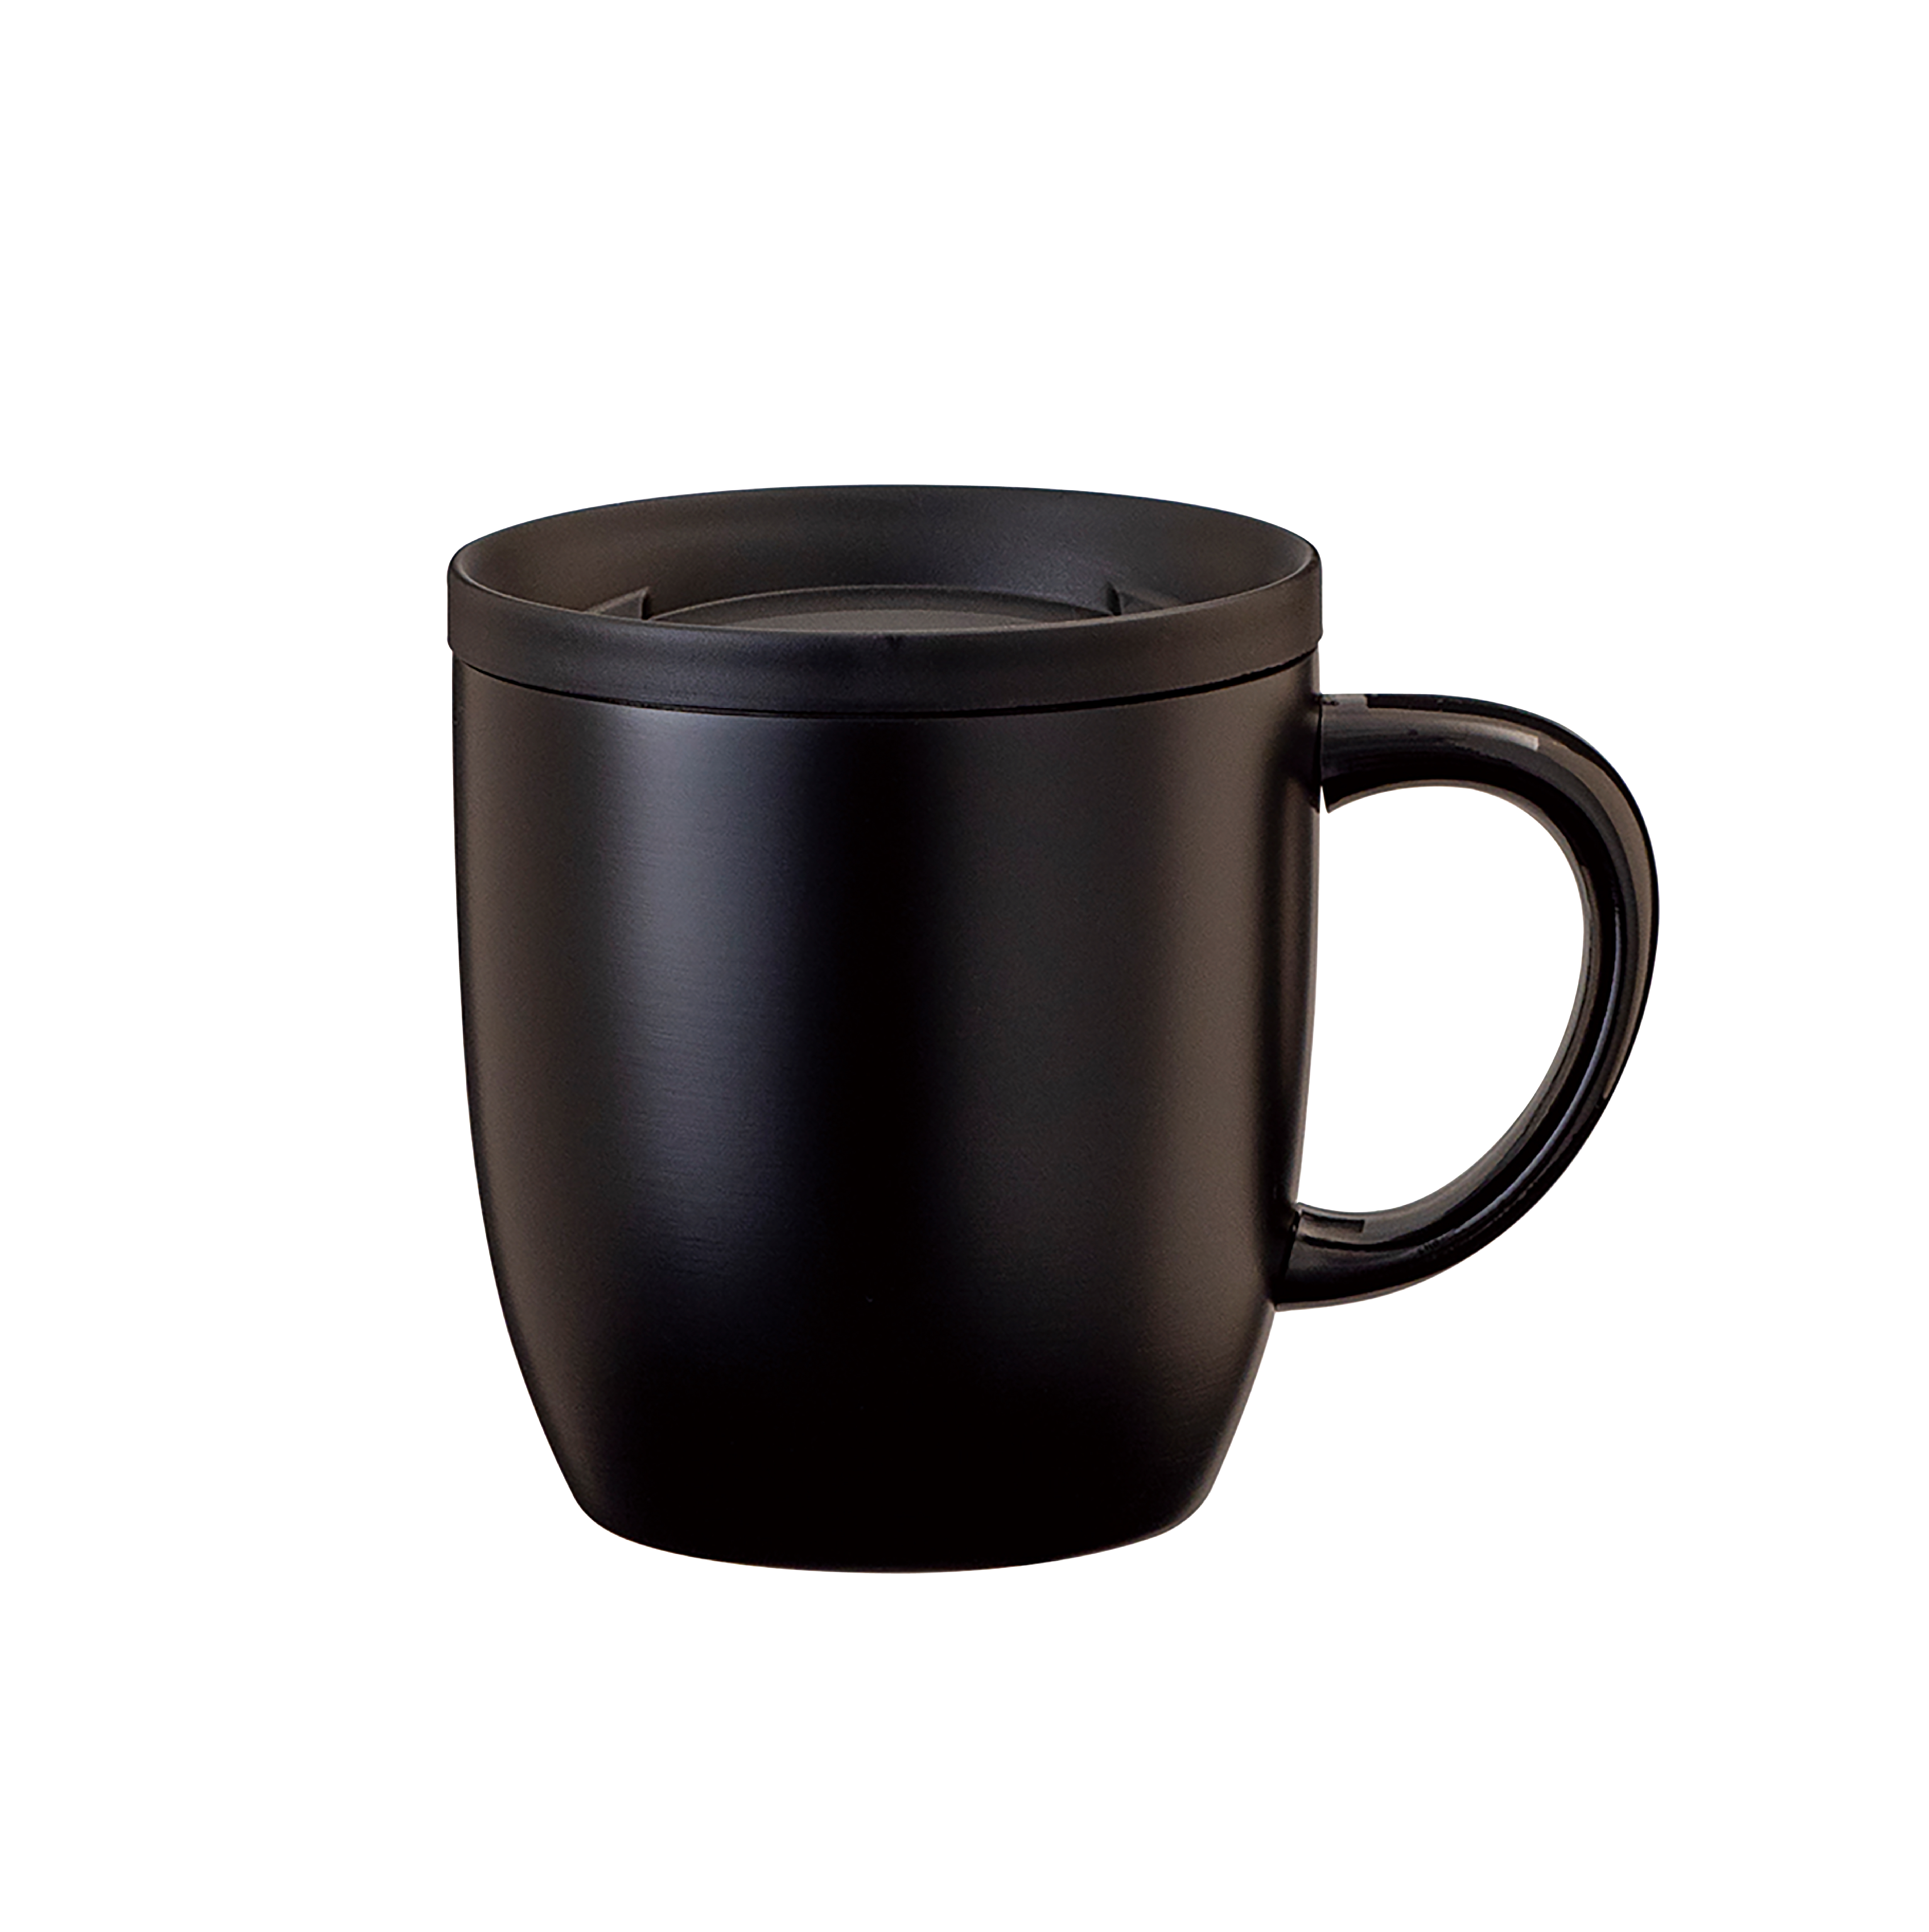 CURRENT コーヒーマグカップ 260ml ブラック image01